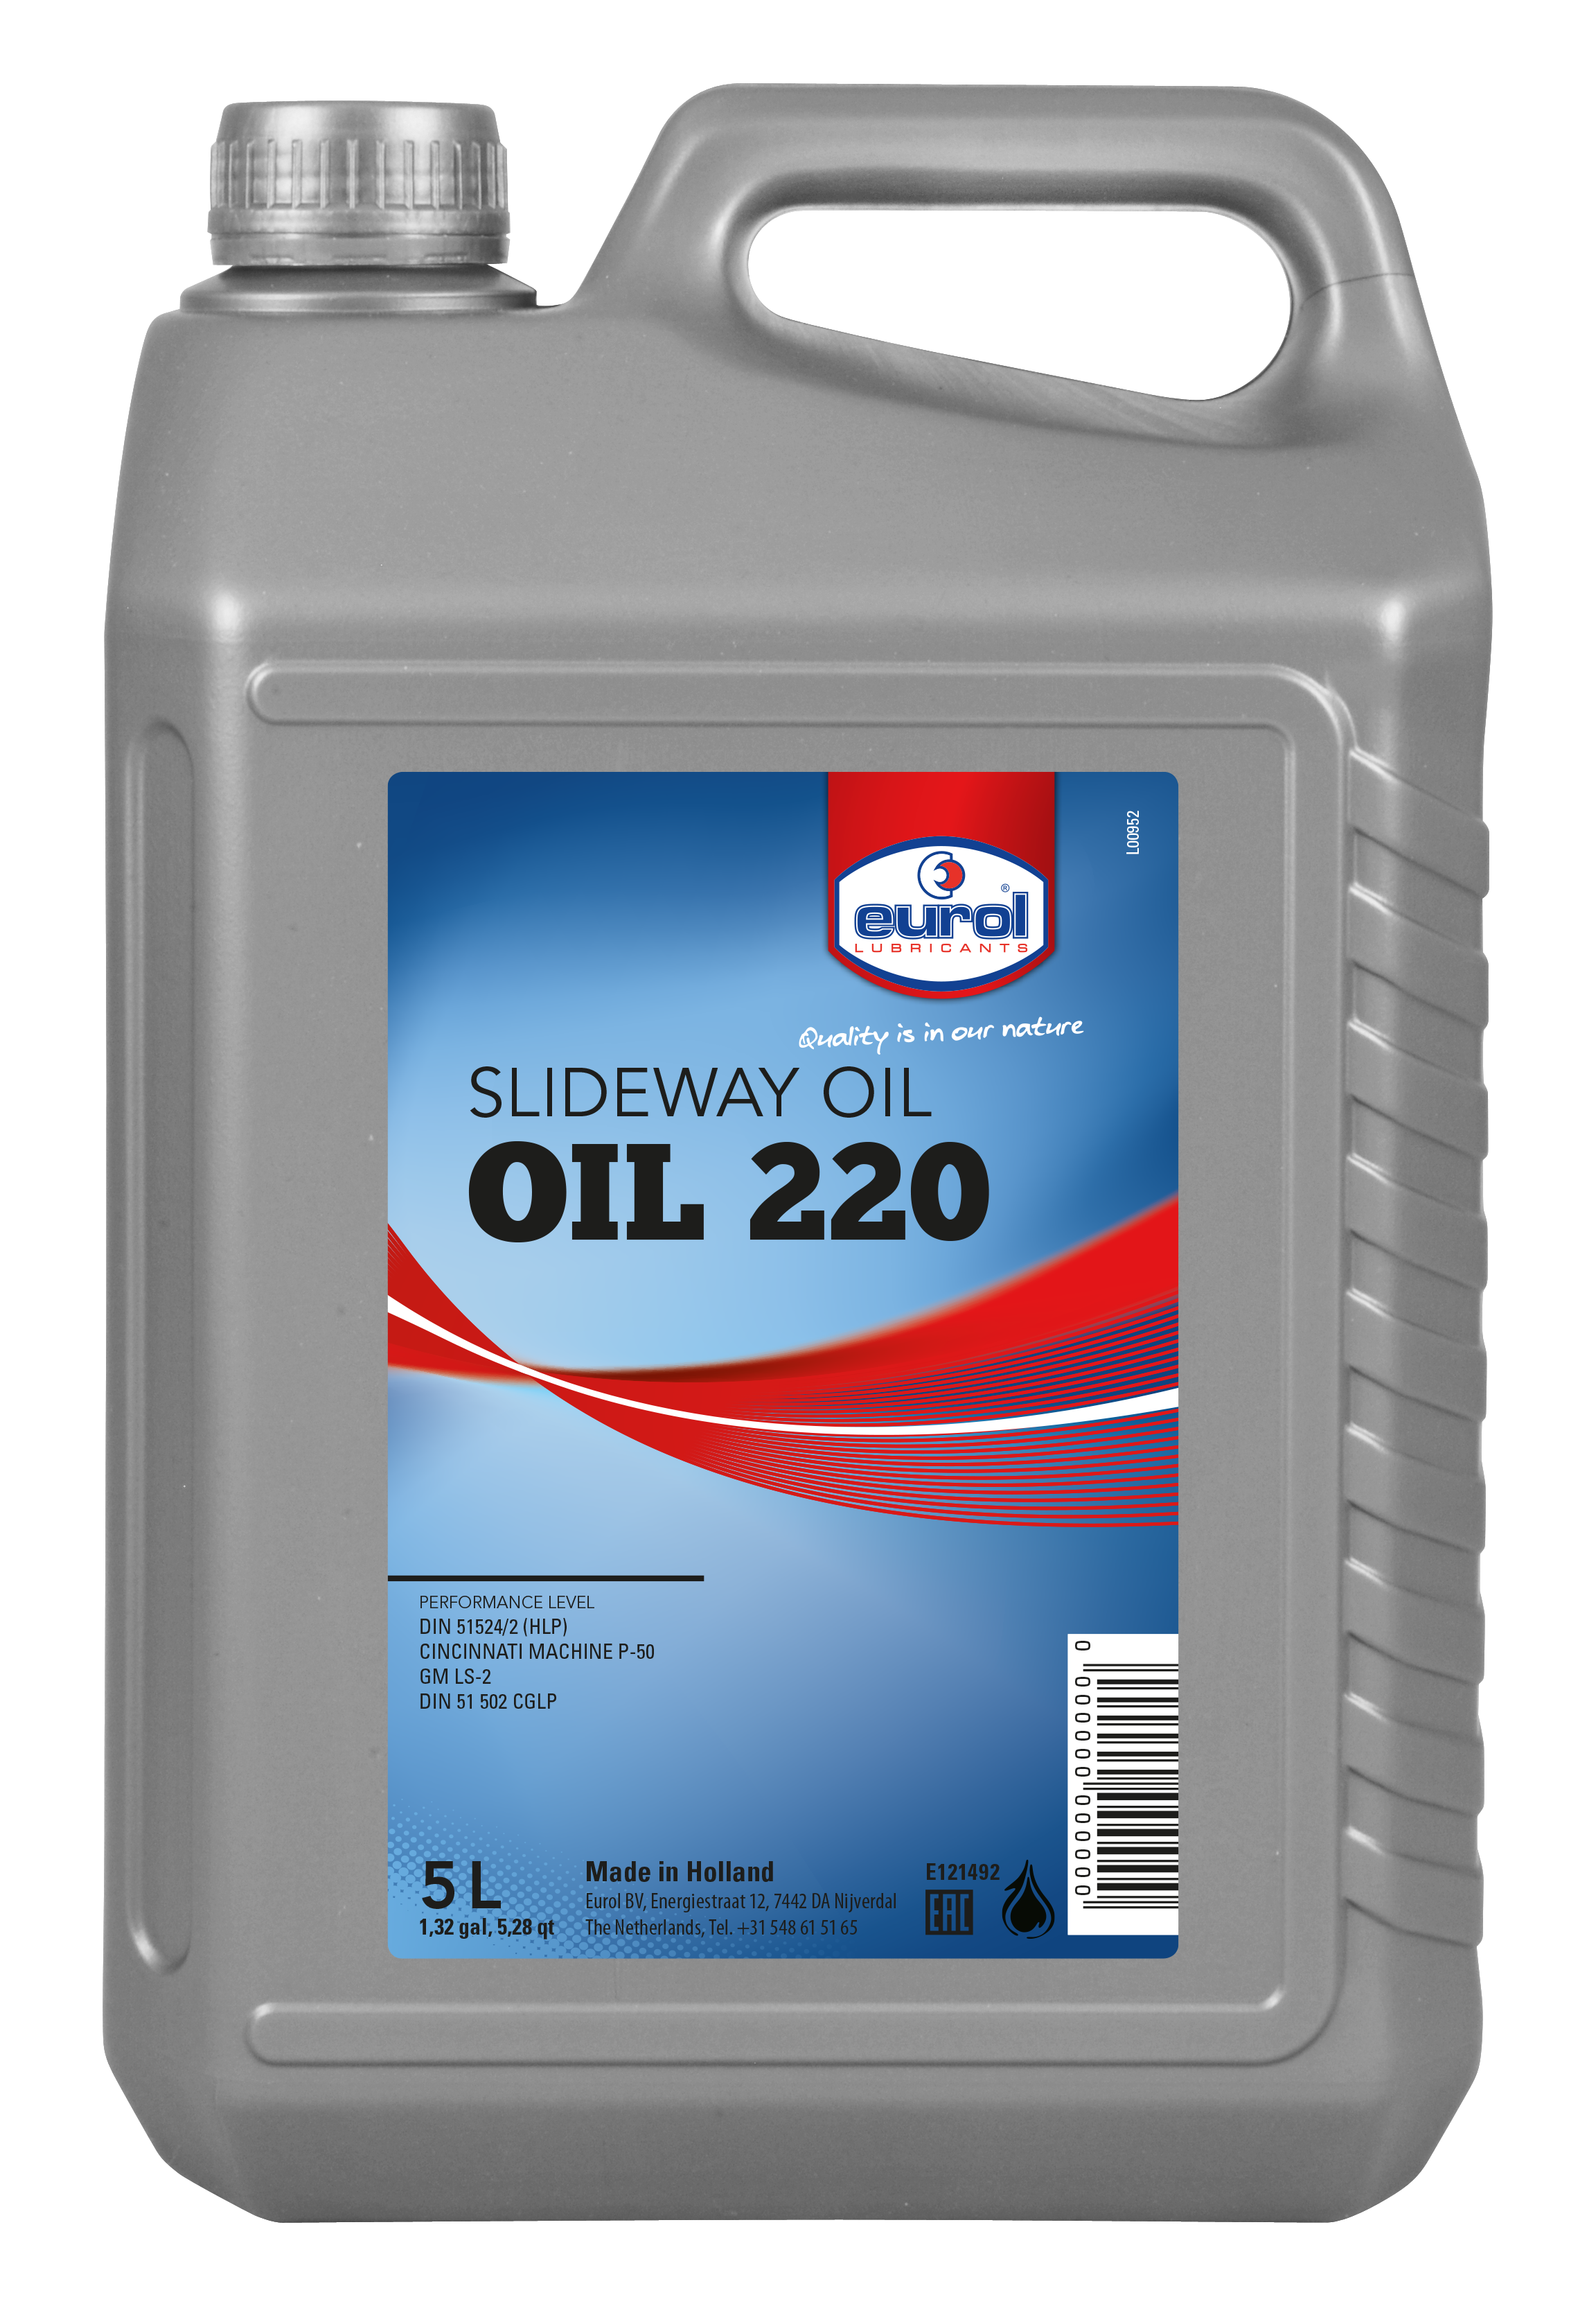 E121492-5 Hoogwaardige olie voor het smeren van leibanen, kunststof en metaal.